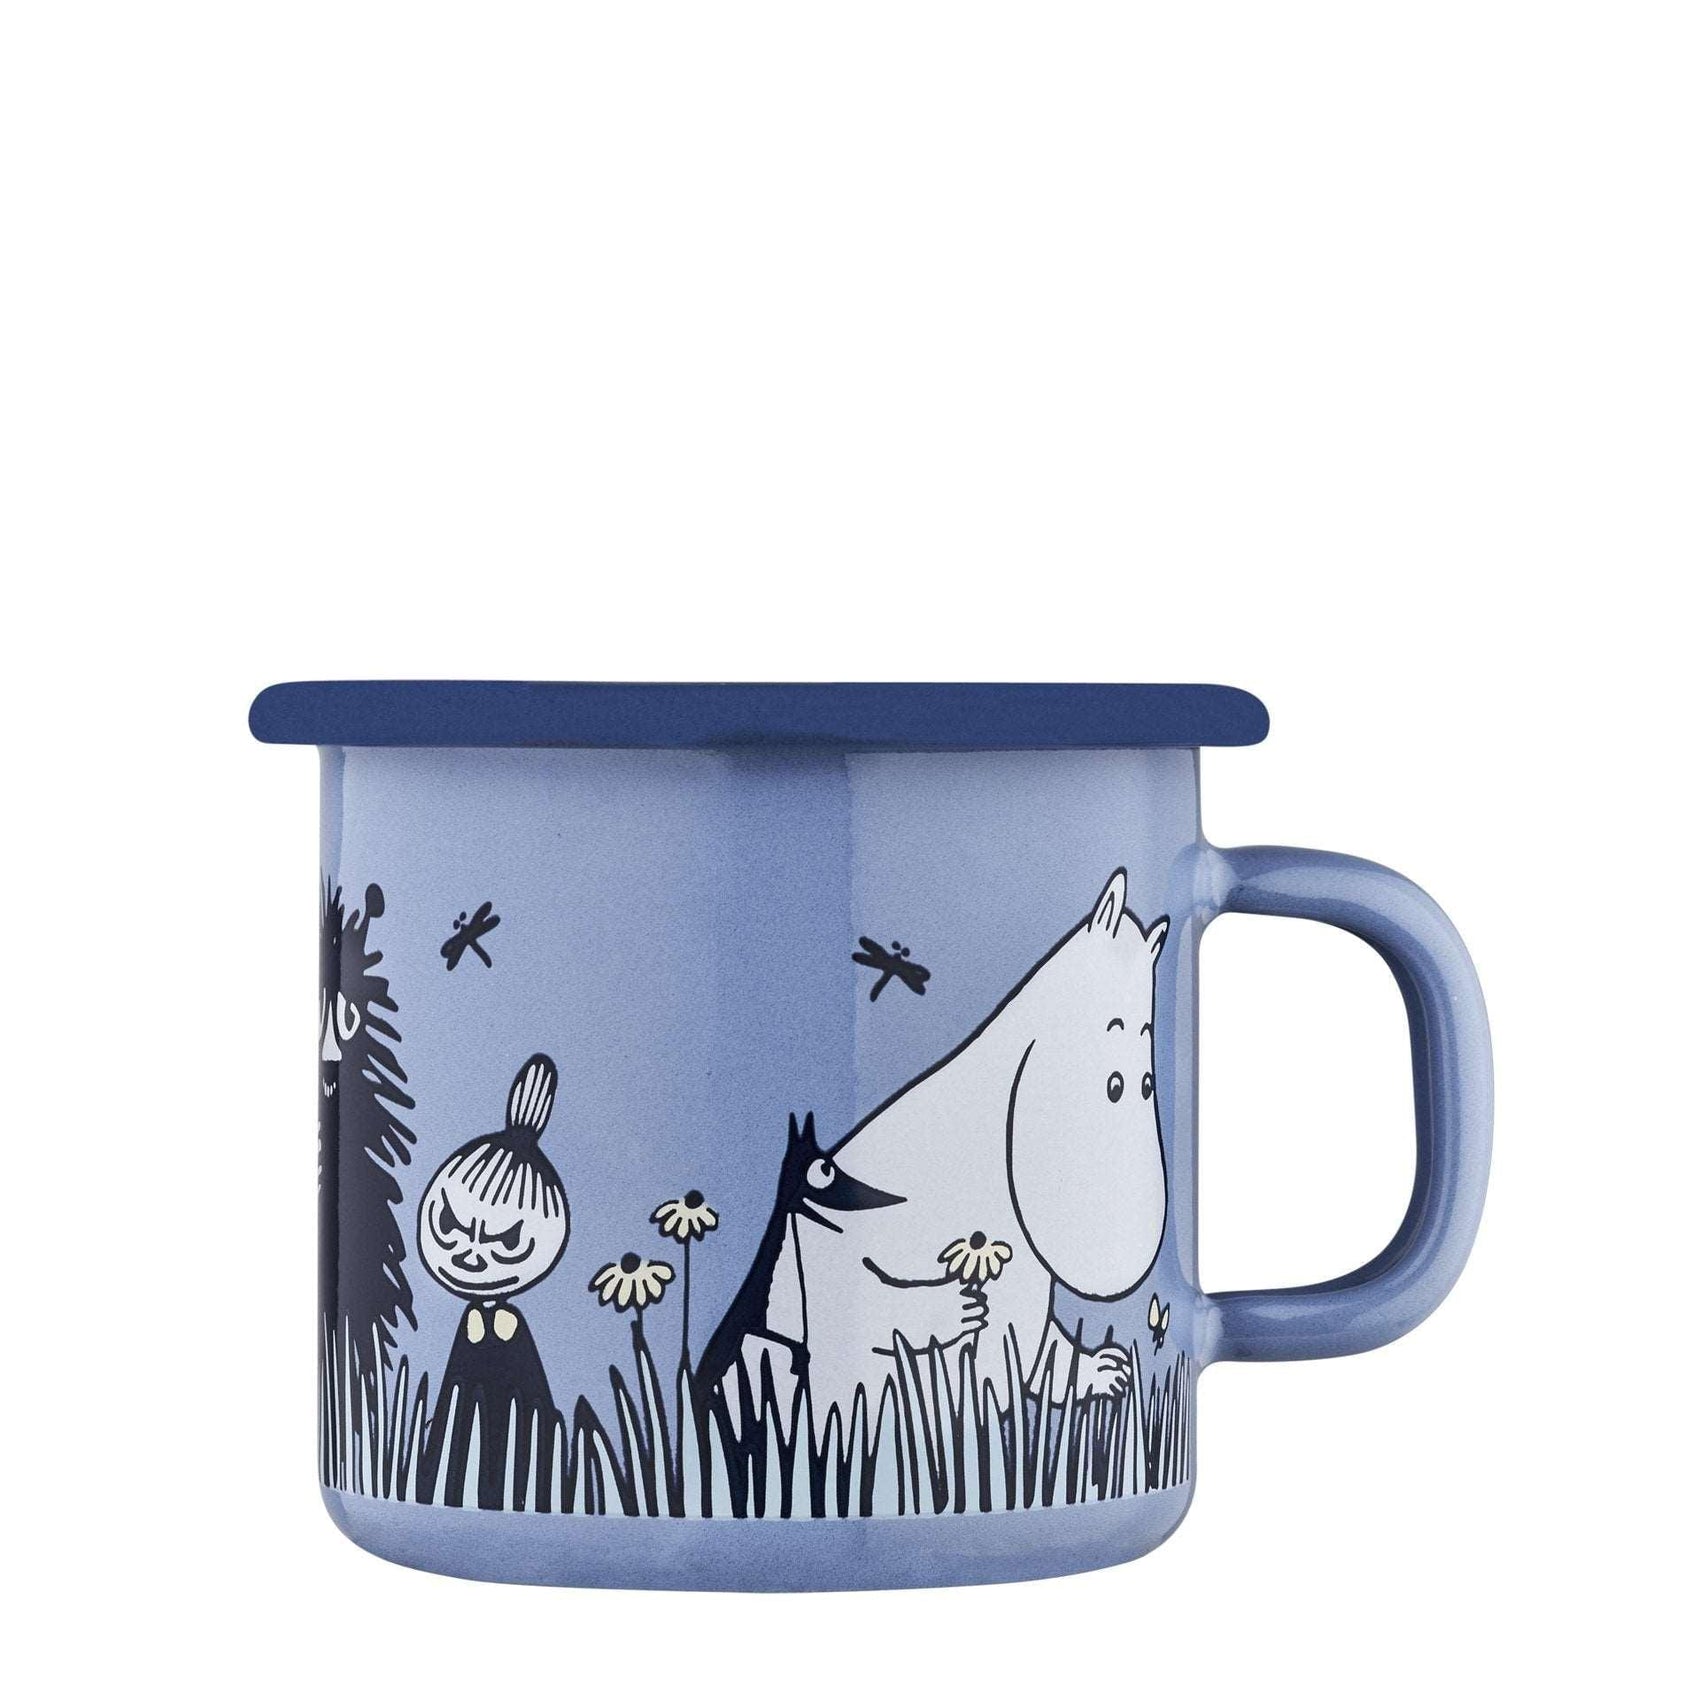 The Moomins enamel mug 2.5dl In the garden, Friends